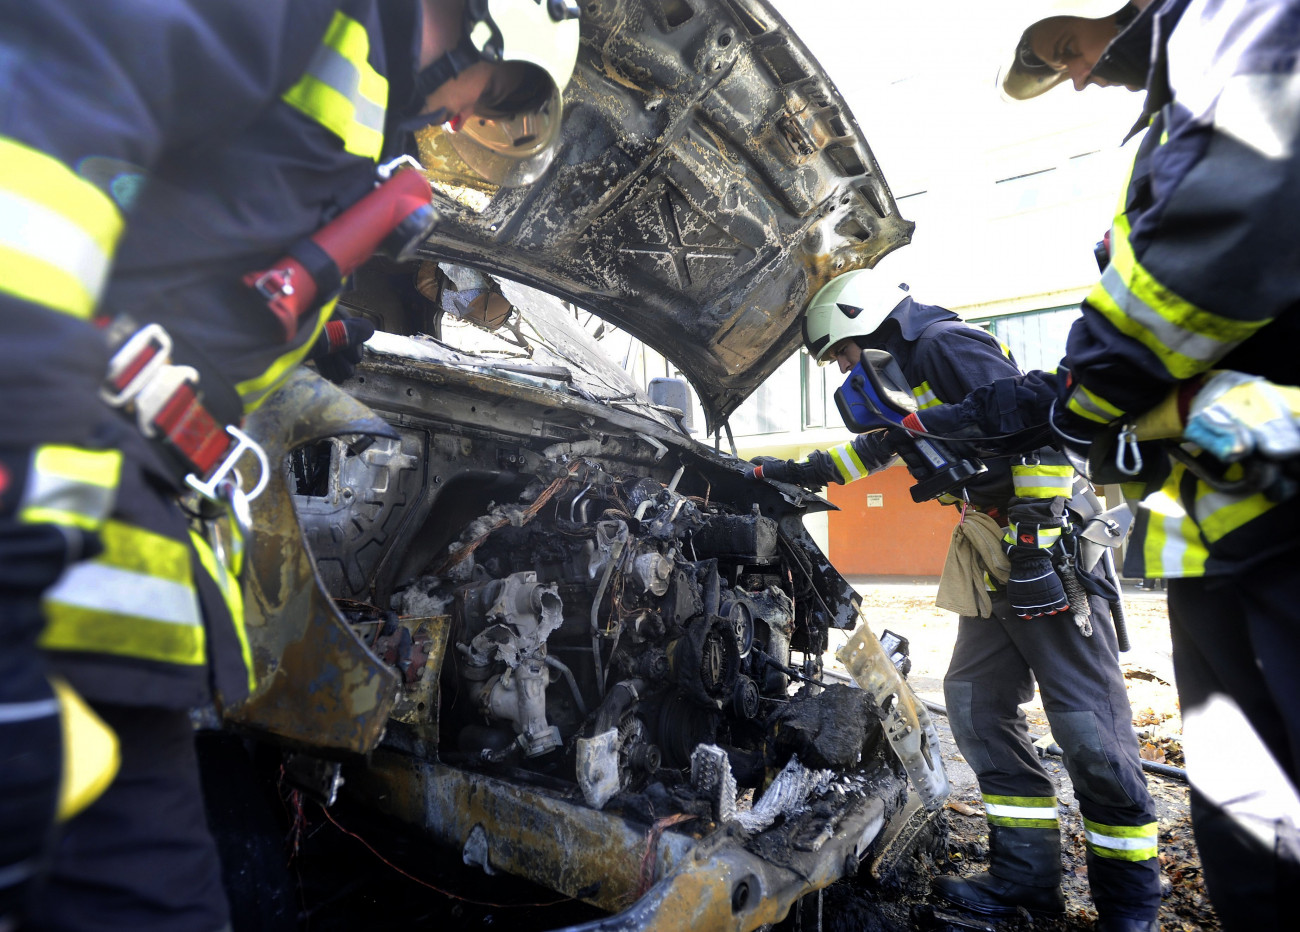 Budapest, 2018. október 29.
Tűzoltók egy kiégett mentőautónál a III. kerületi Folyamőr utcában 2018. október 29-én. A parkoló jármű motorterében kisebb tűz keletkezett, amelyet a tűzoltók eloltottak, a műszaki okot szakértői vizsgálat fogja tisztázni. A mentők egy beteg kórházba szállításához érkeztek, éppen a lakásban voltak. A stabil állapotú beteget így másik mentőautó szállította el.
MTI/Mihádák Zoltán